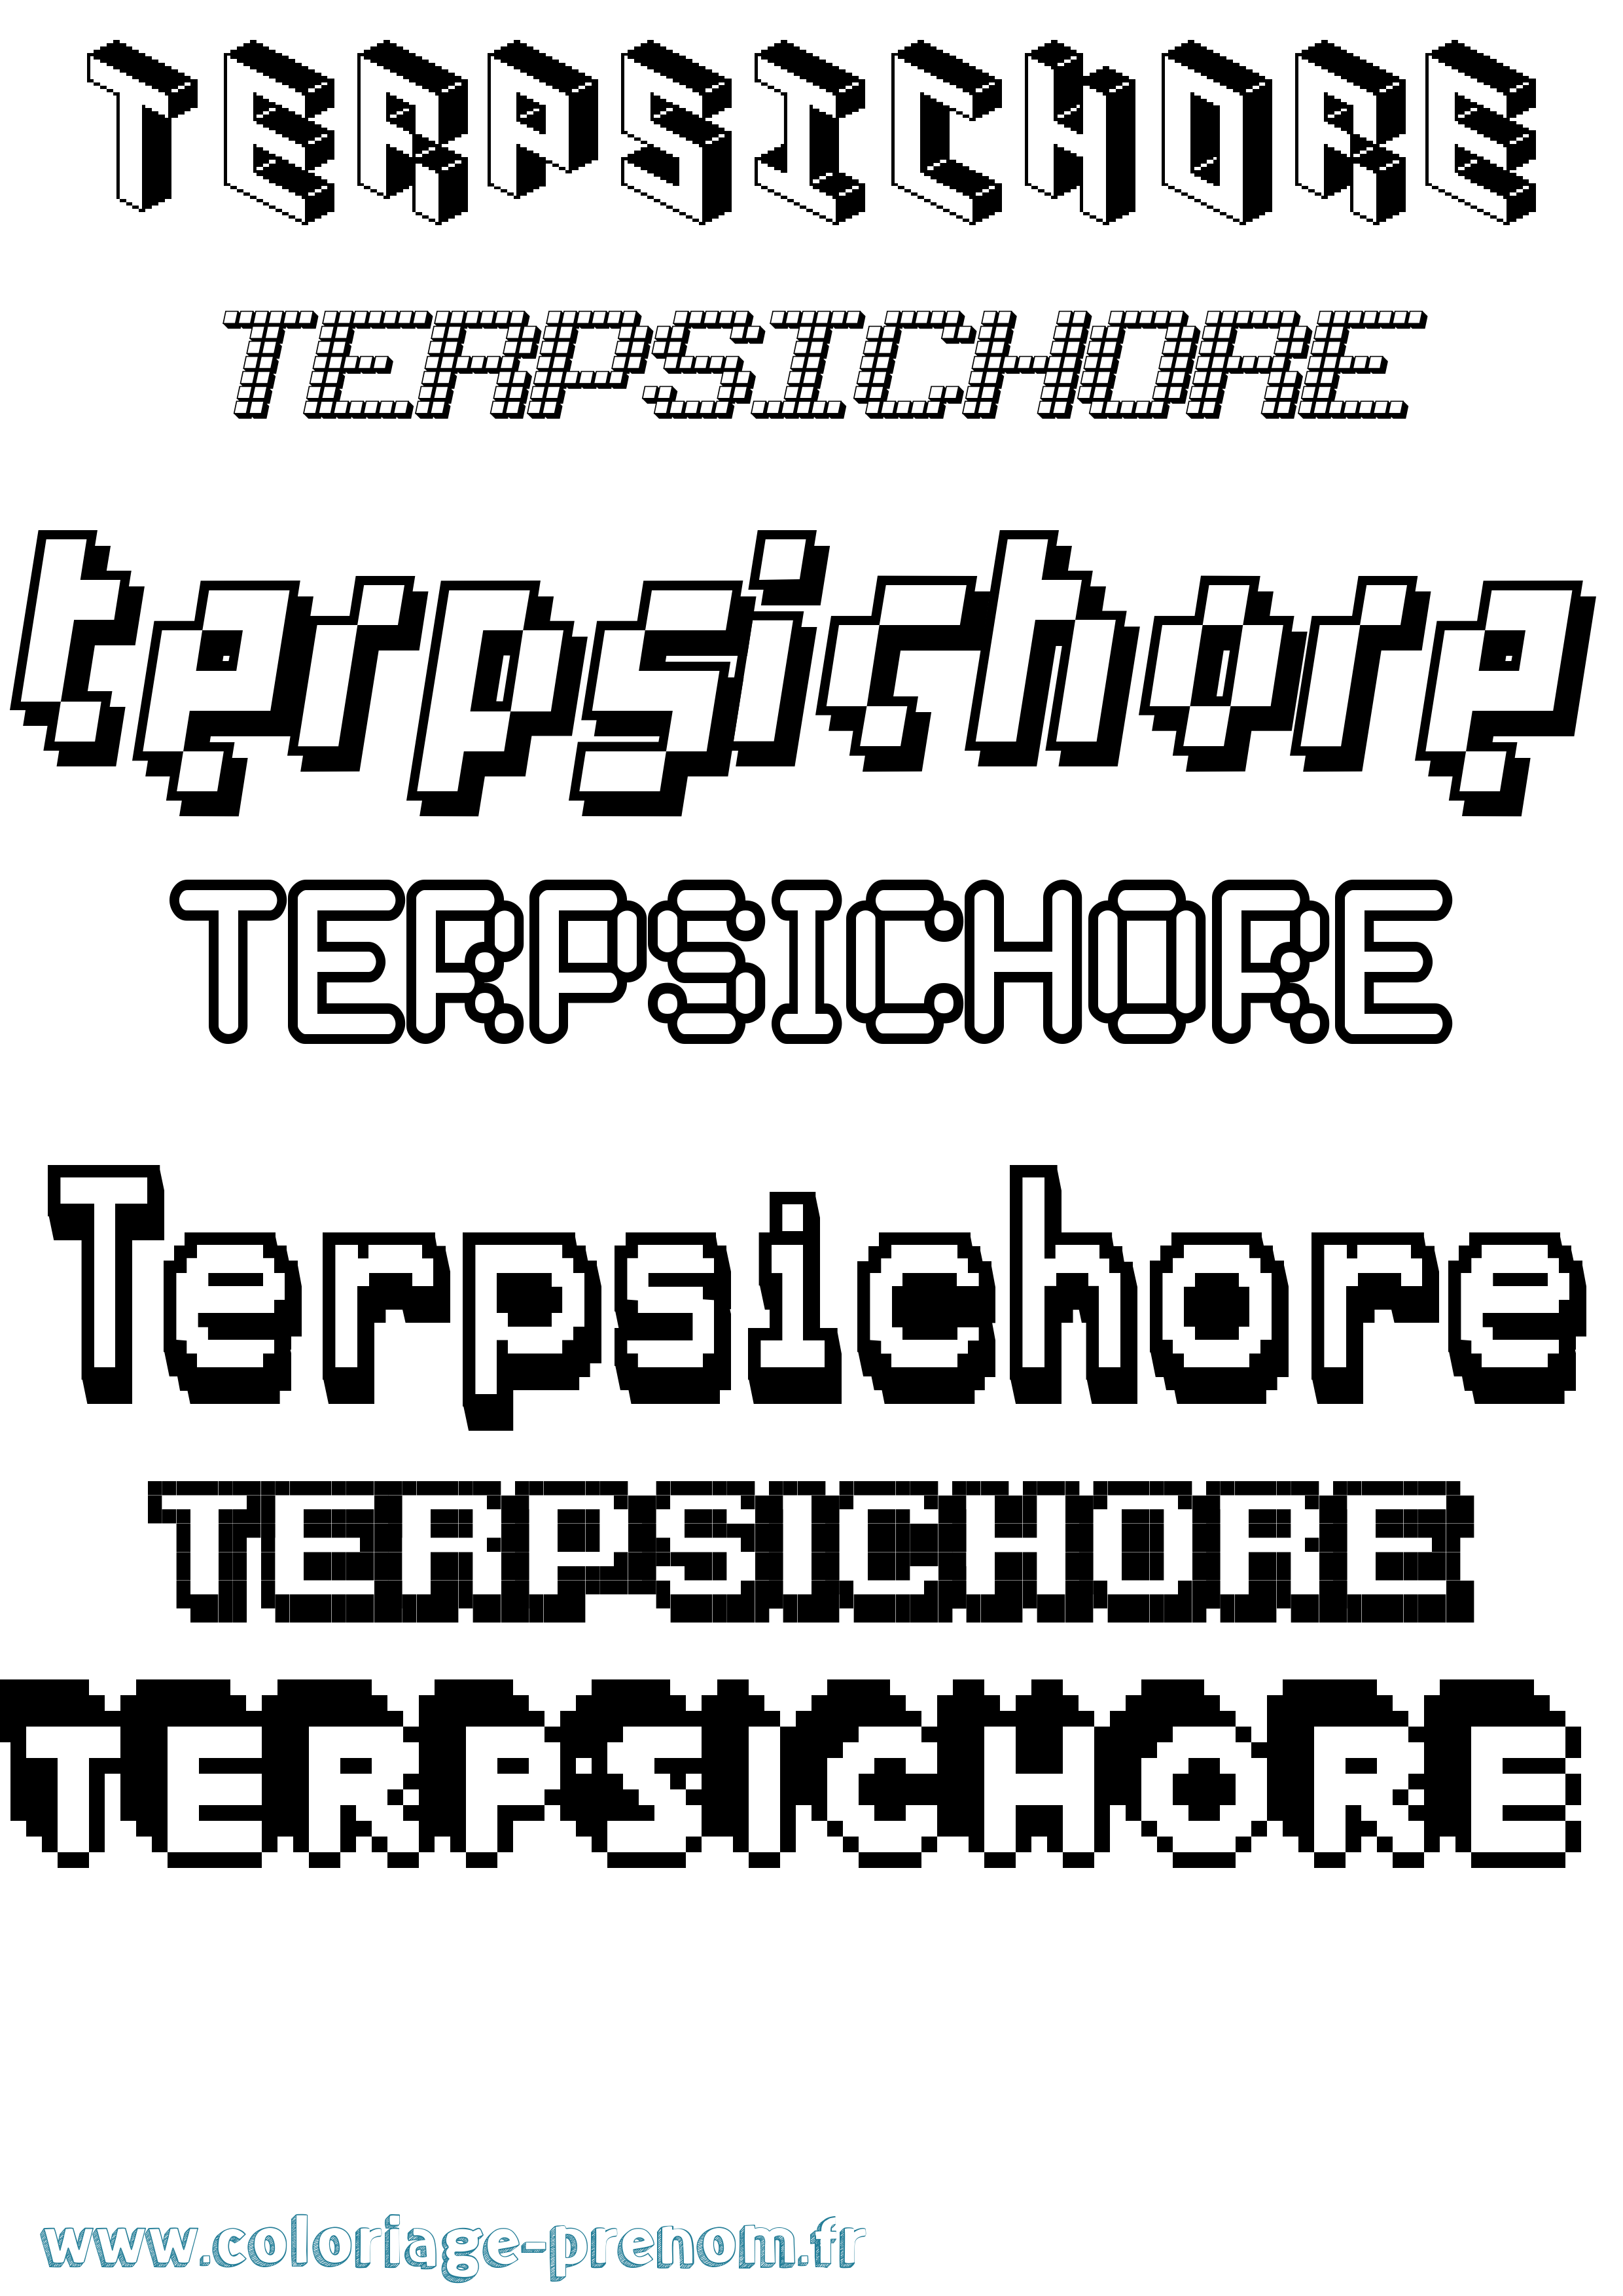 Coloriage prénom Terpsichore Pixel